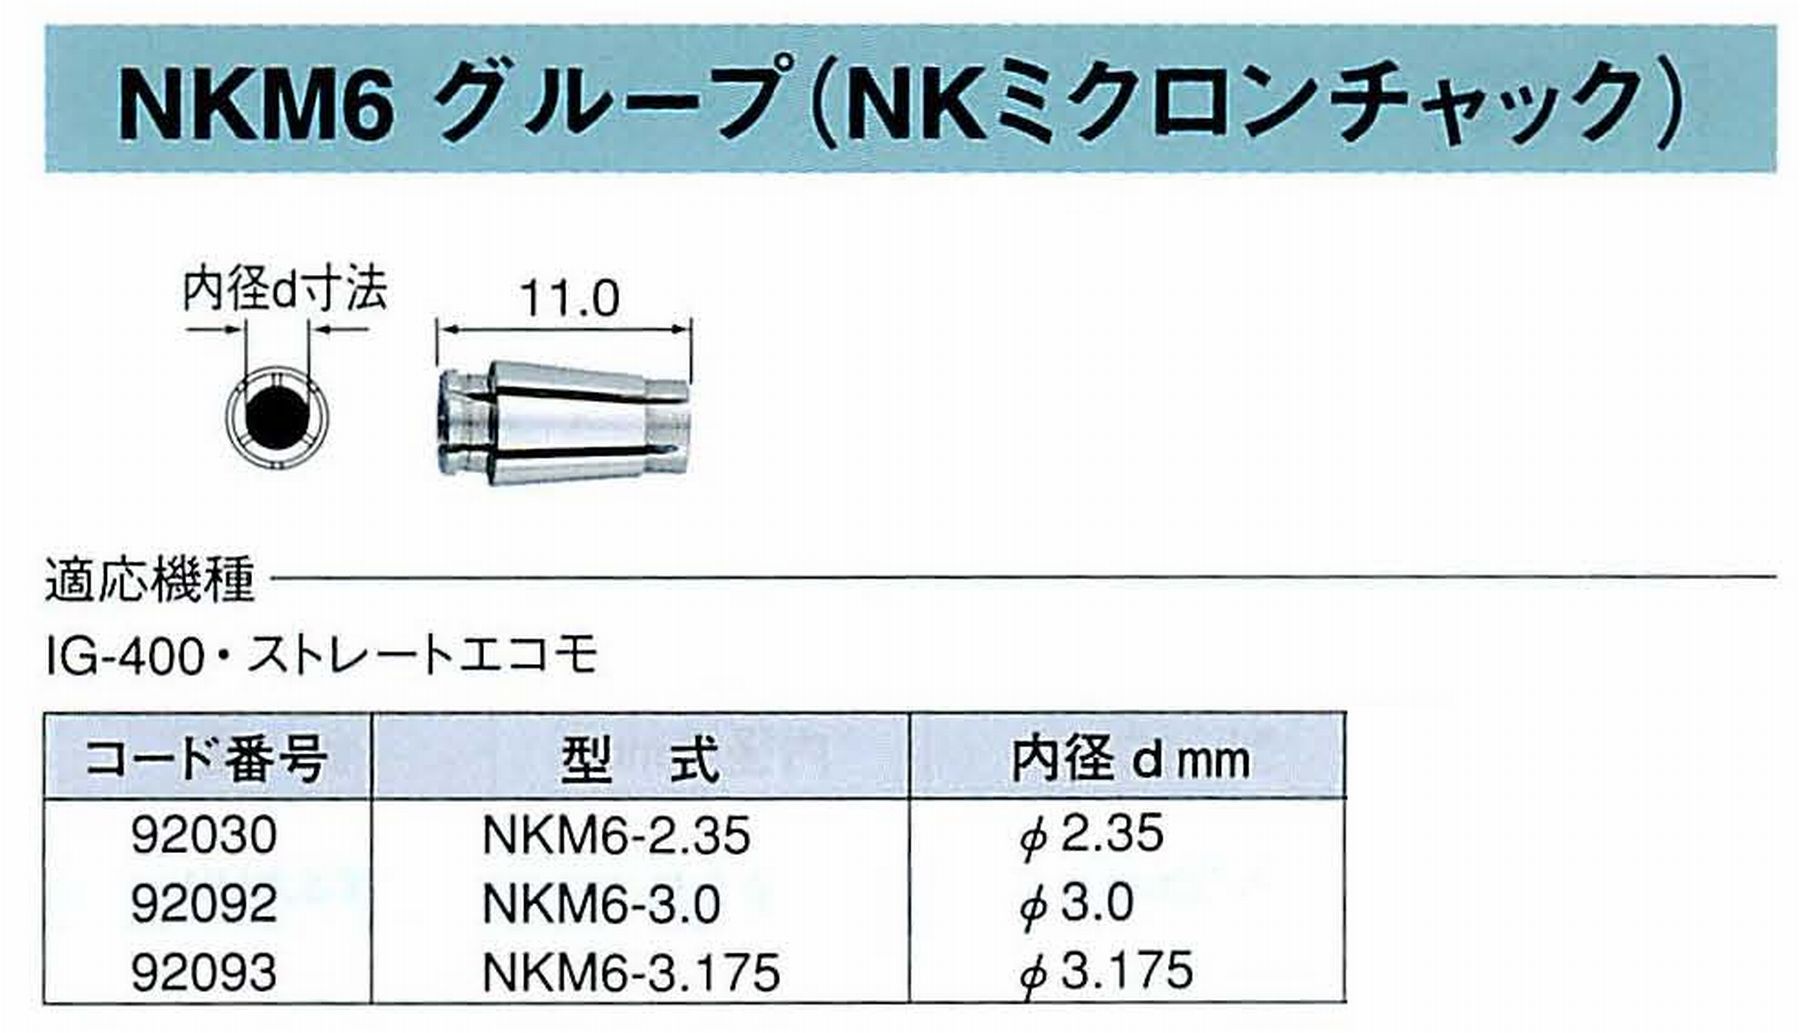 ナカニシ/NAKANISHI コレットチャック NKミクロンチャック コード番号 92030 型式 NKM6-2.35 内径:Φ2.35